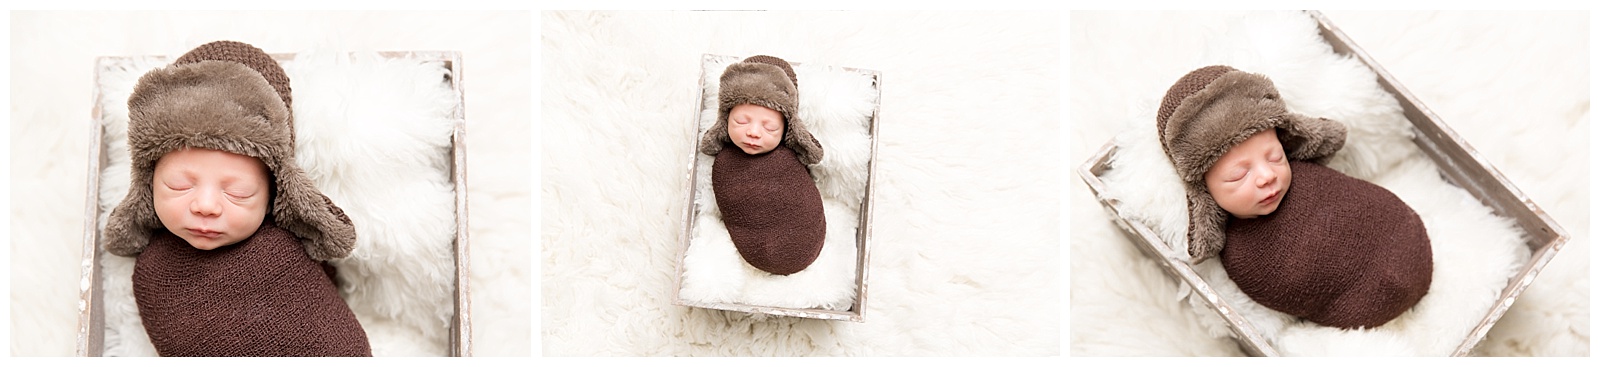 Pacific Grove Newborn Baby Photographer_0789.jpg